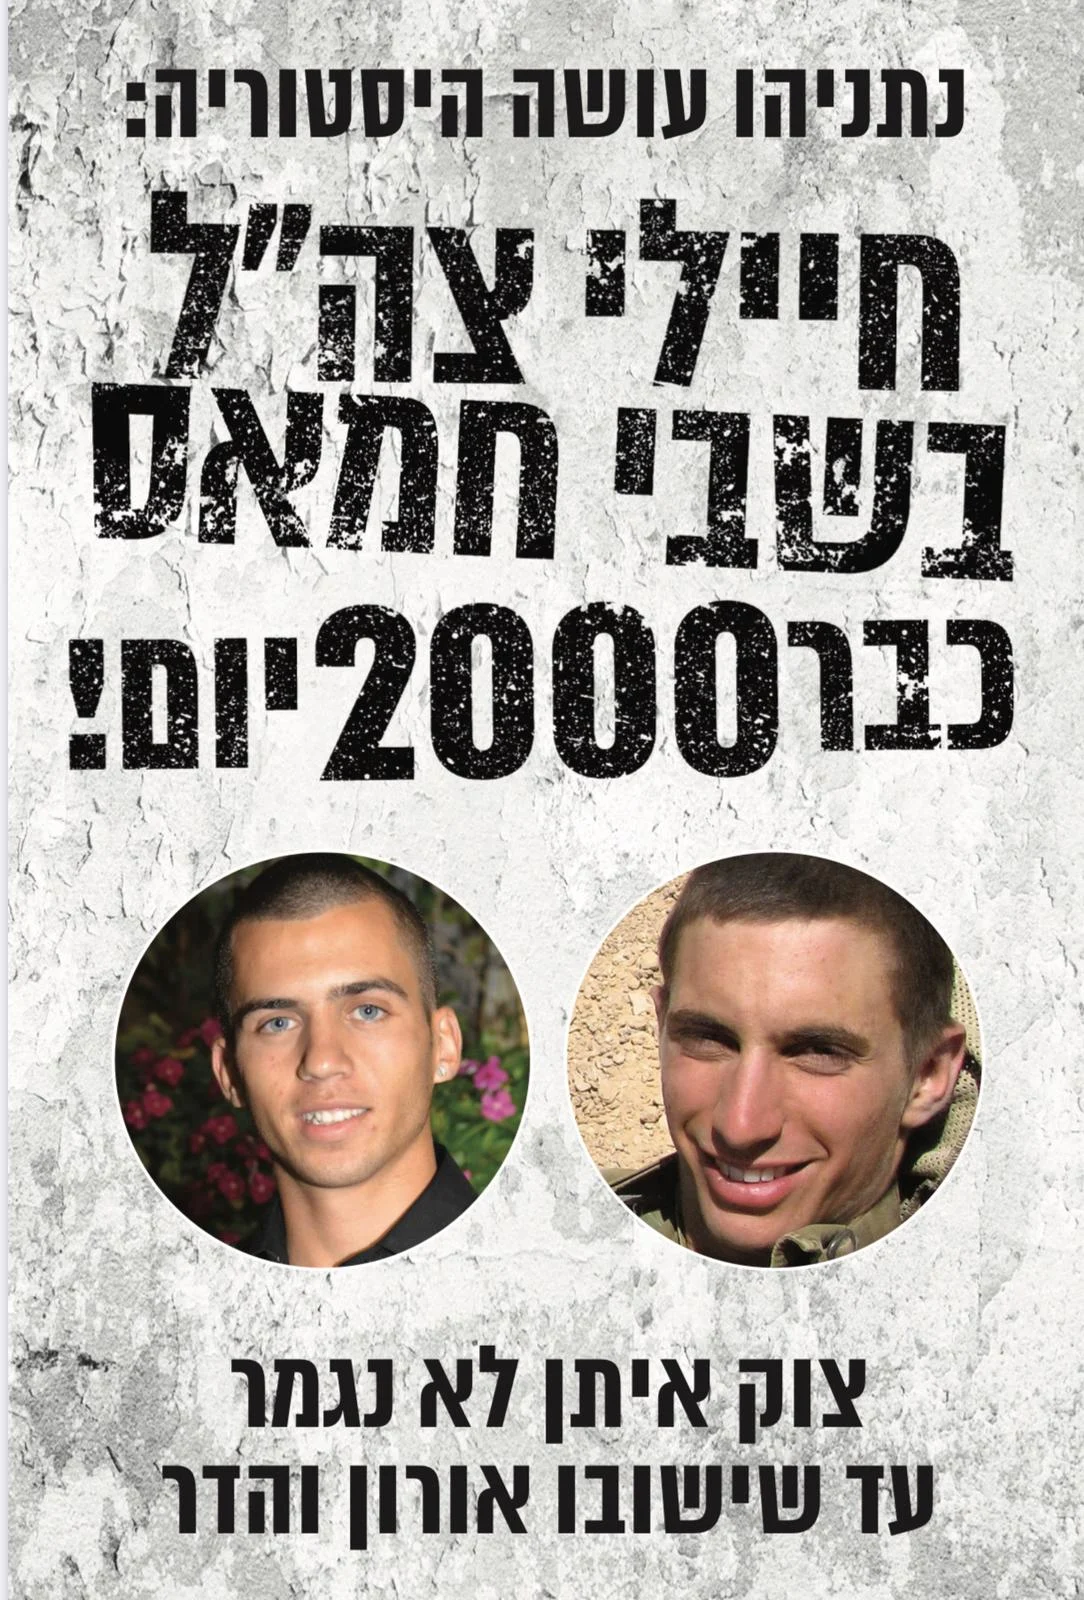 כרזה שפורסמה לשחרורם אורון שאול והדר גולדין